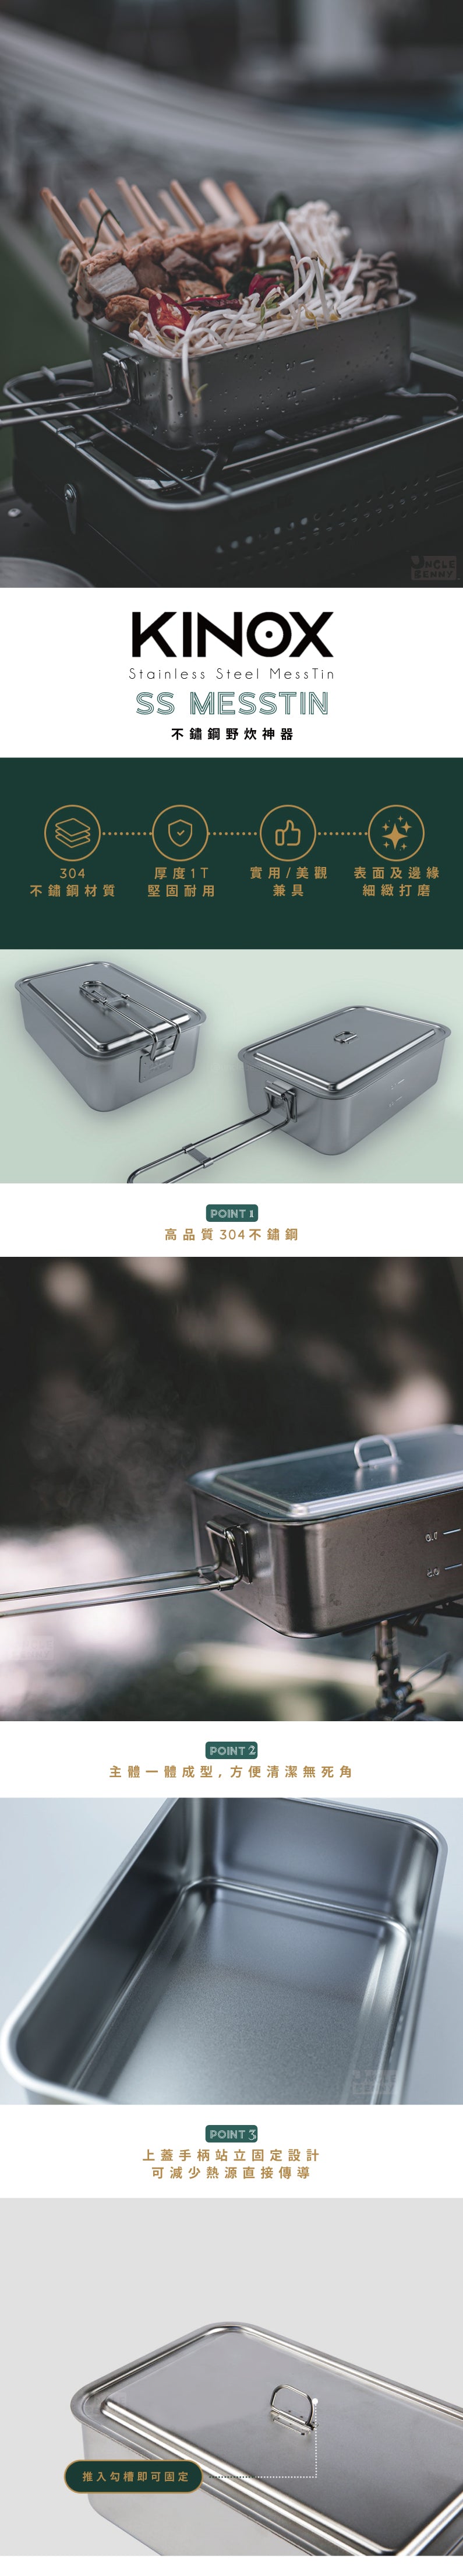 韓國KINOX • 不鏽鋼野炊神器 SS Messtin & 相關配件們 洞洞蒸架 洞洞炸物籃 專用收納包 不鏽鋼飯盒